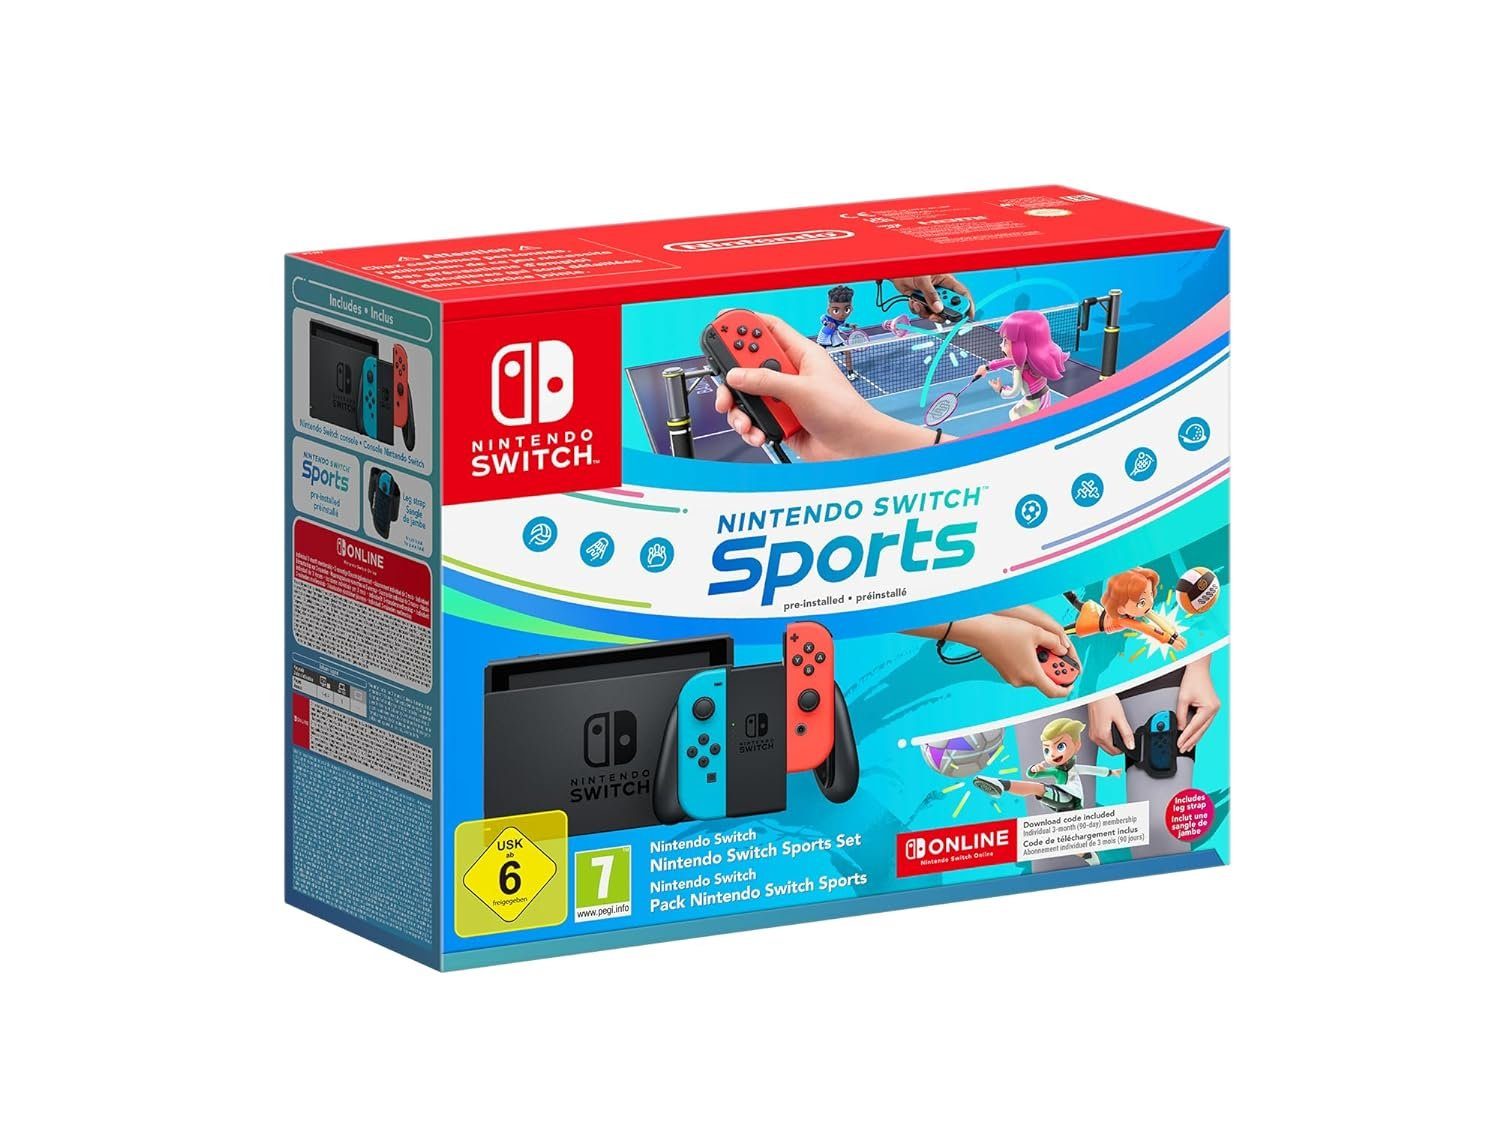 Nintendo Nintendo Switch Sports Set + 3 Monate Nintendo Switch Online,  inkl. Nintendo Switch Sports (vorinstalliert) und Beingurt | Game Cards & Gaming Guthaben